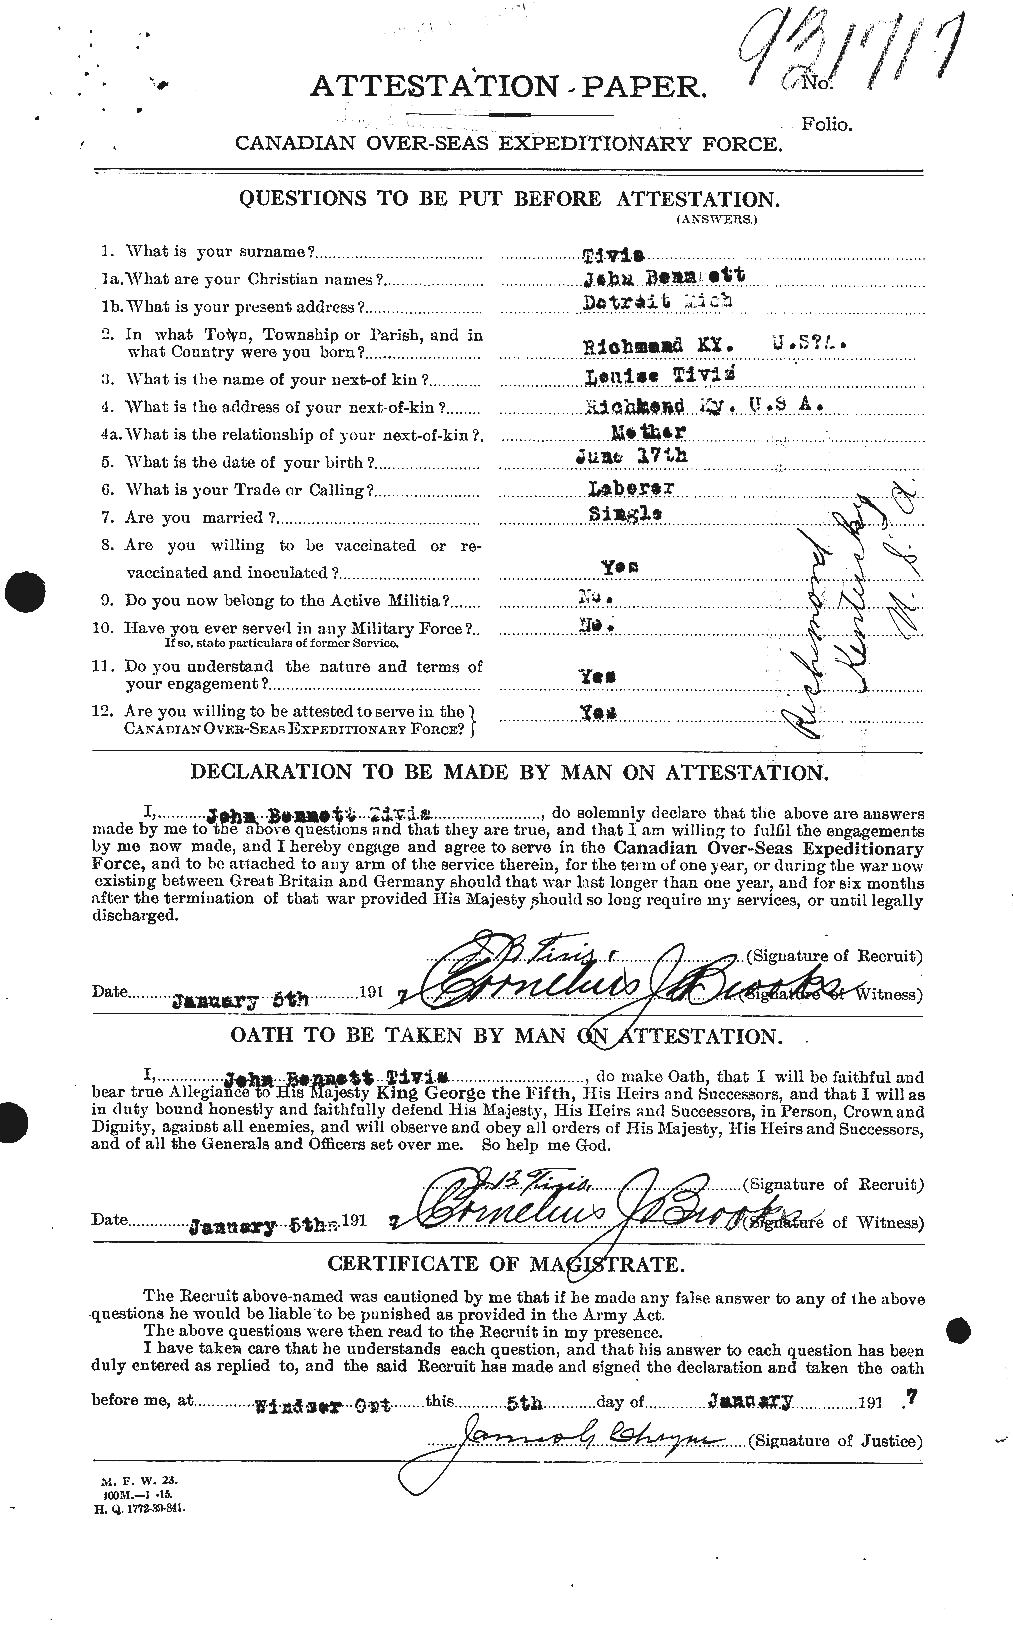 Dossiers du Personnel de la Première Guerre mondiale - CEC 634995a